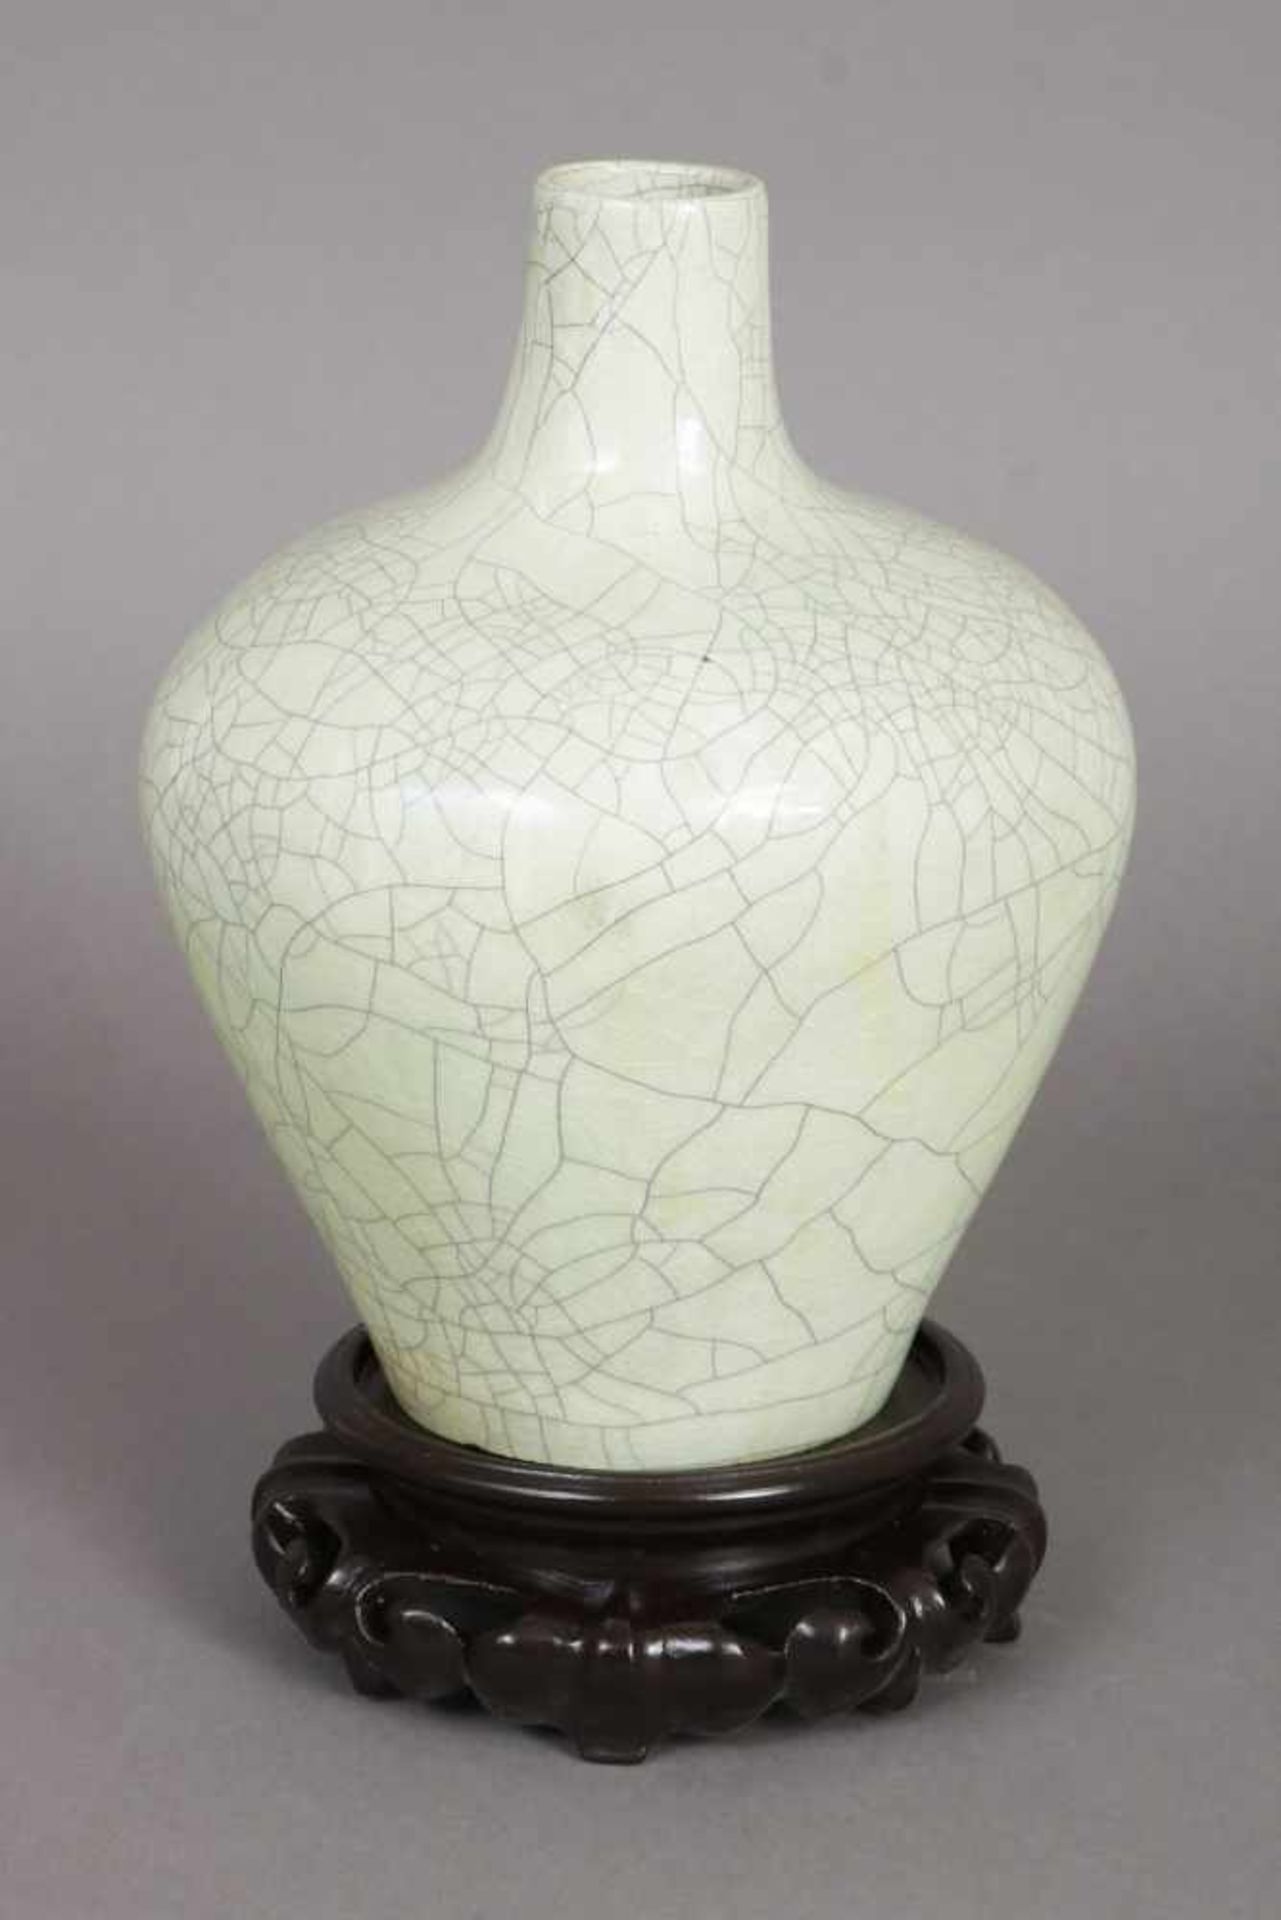 Asiatische Vase Porzellan, seladongrüne Glasur mit Craquelee-Dekor, hochbauchiger Korpus mit